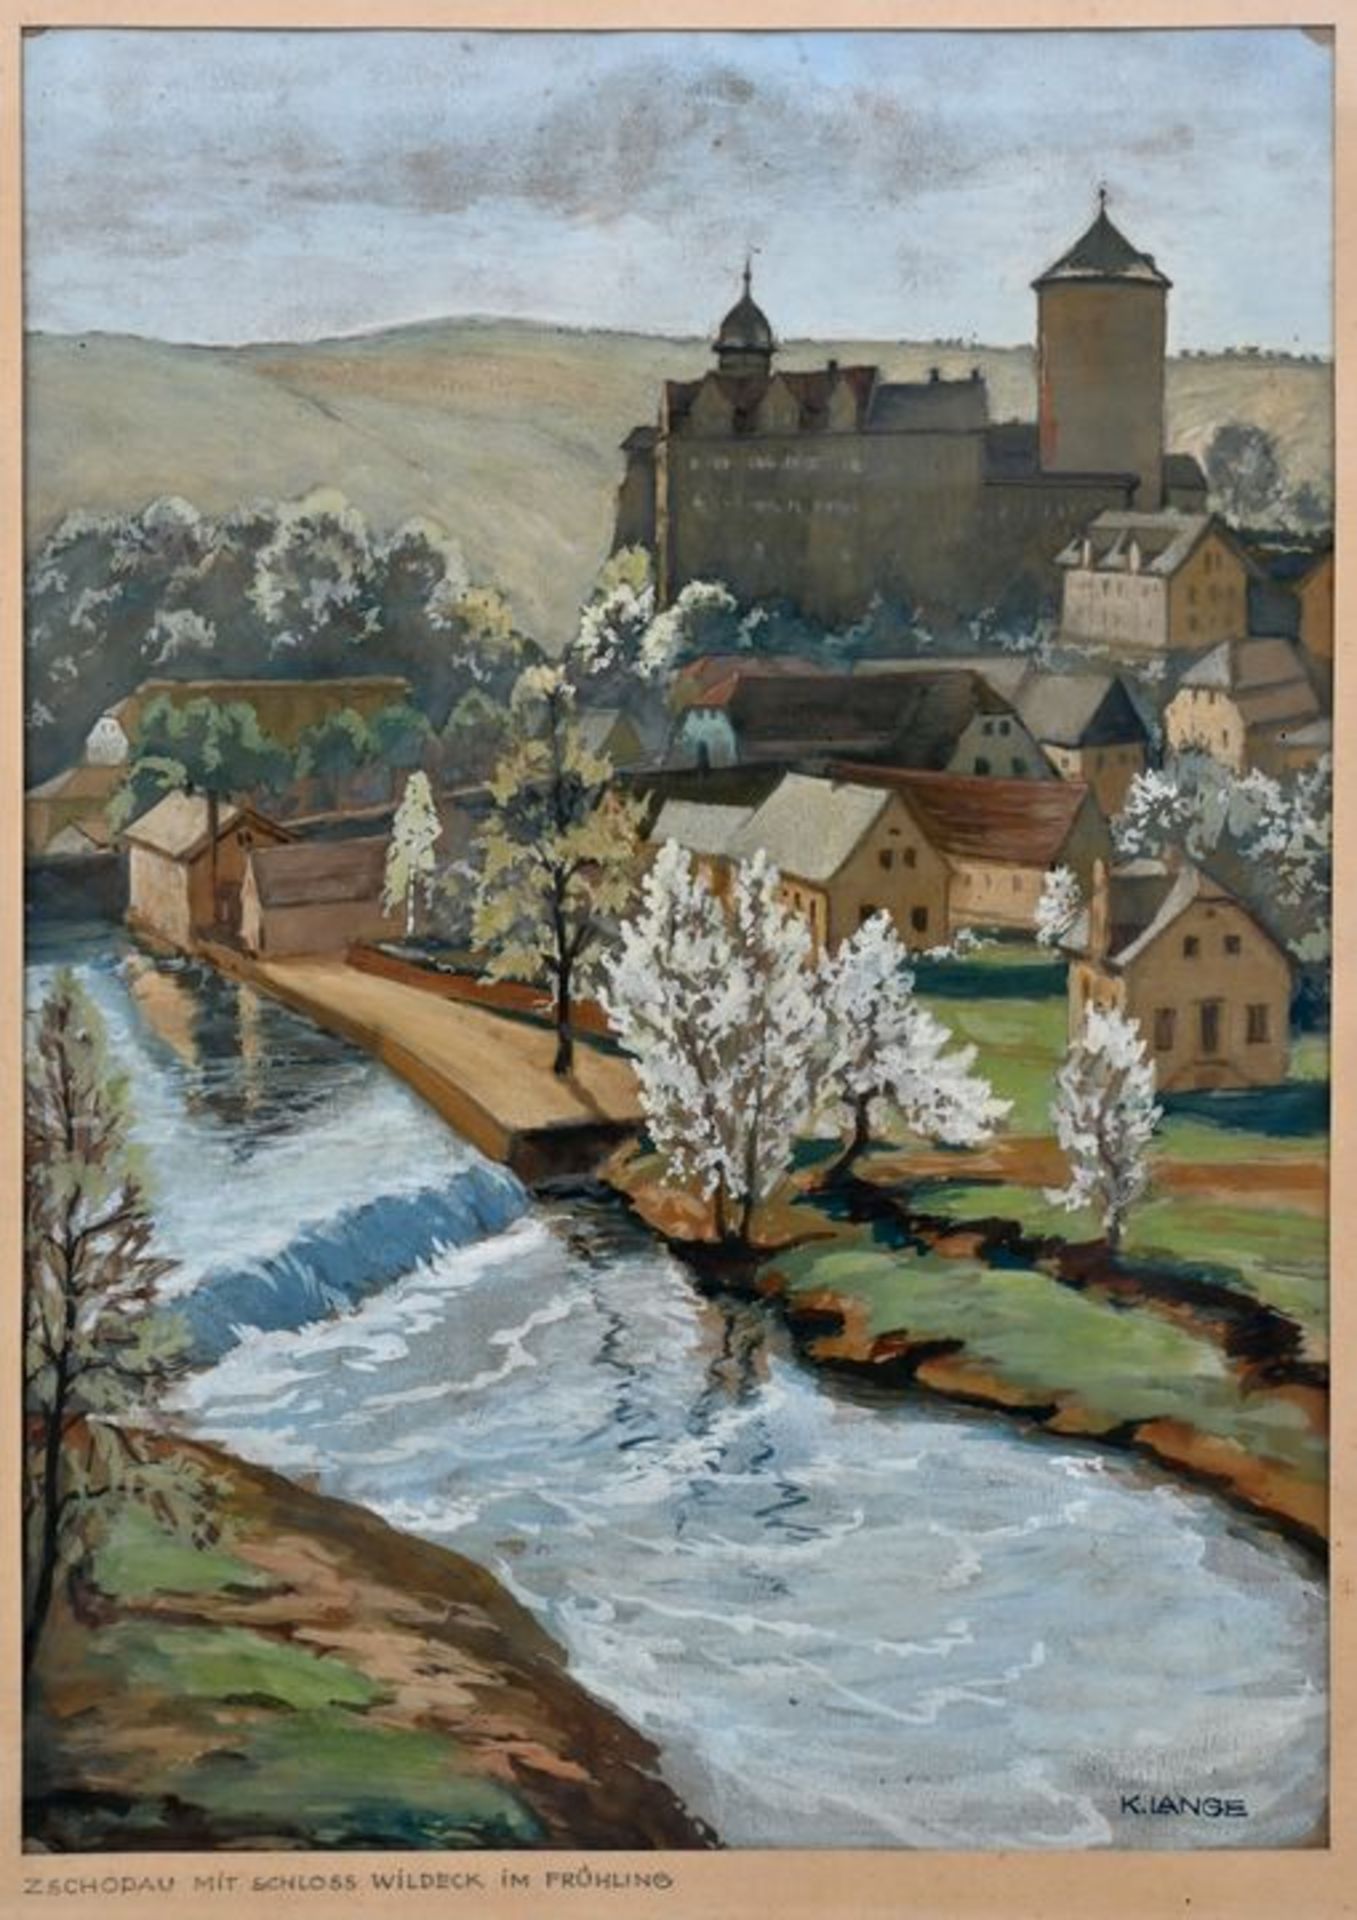 Burgszenerie/ Landscape with castle